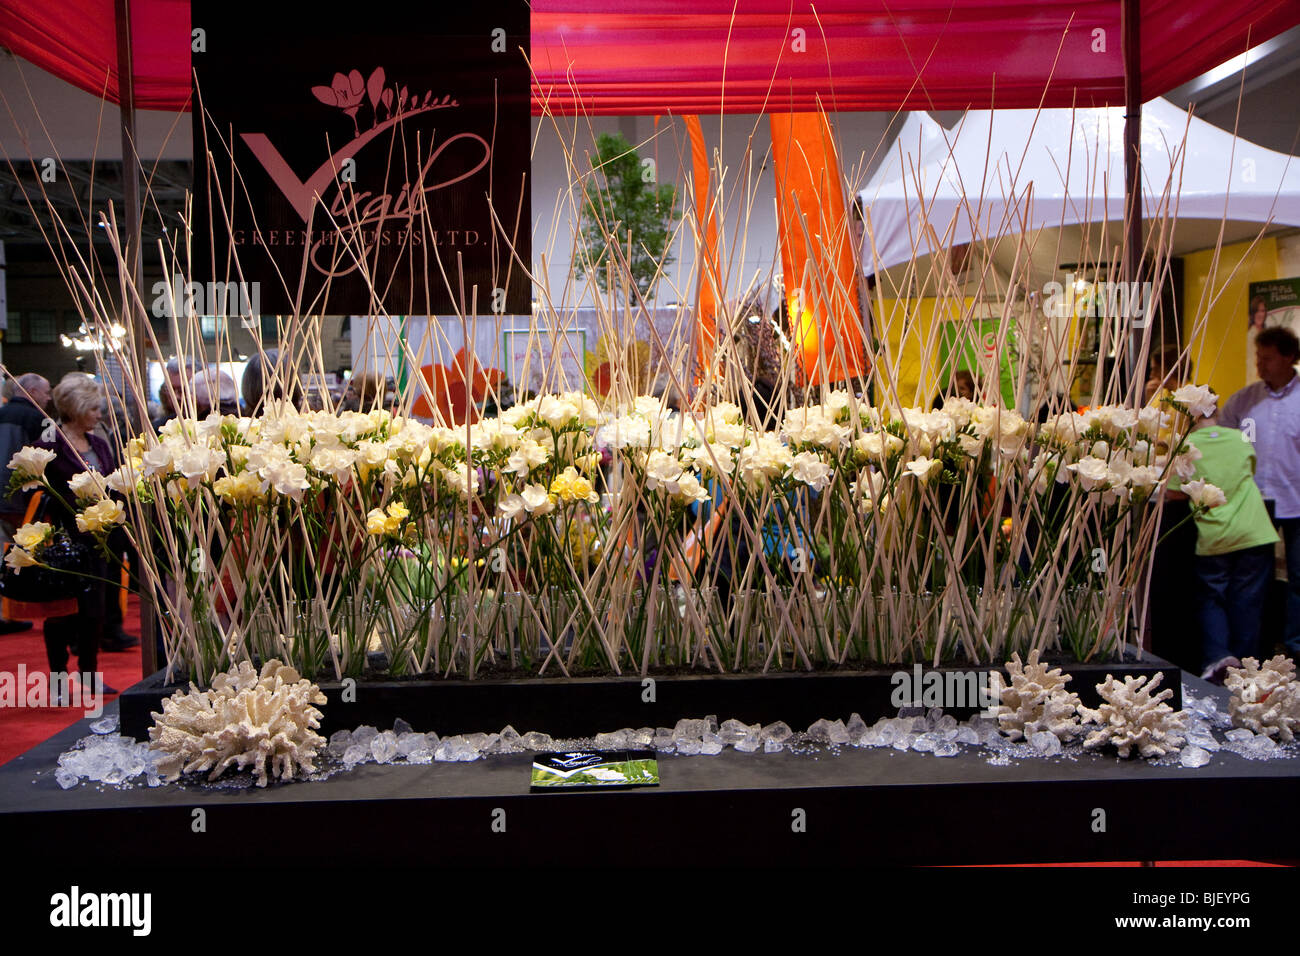 Arrangement floral blanc table vue côté vitrine d'affichage Banque D'Images